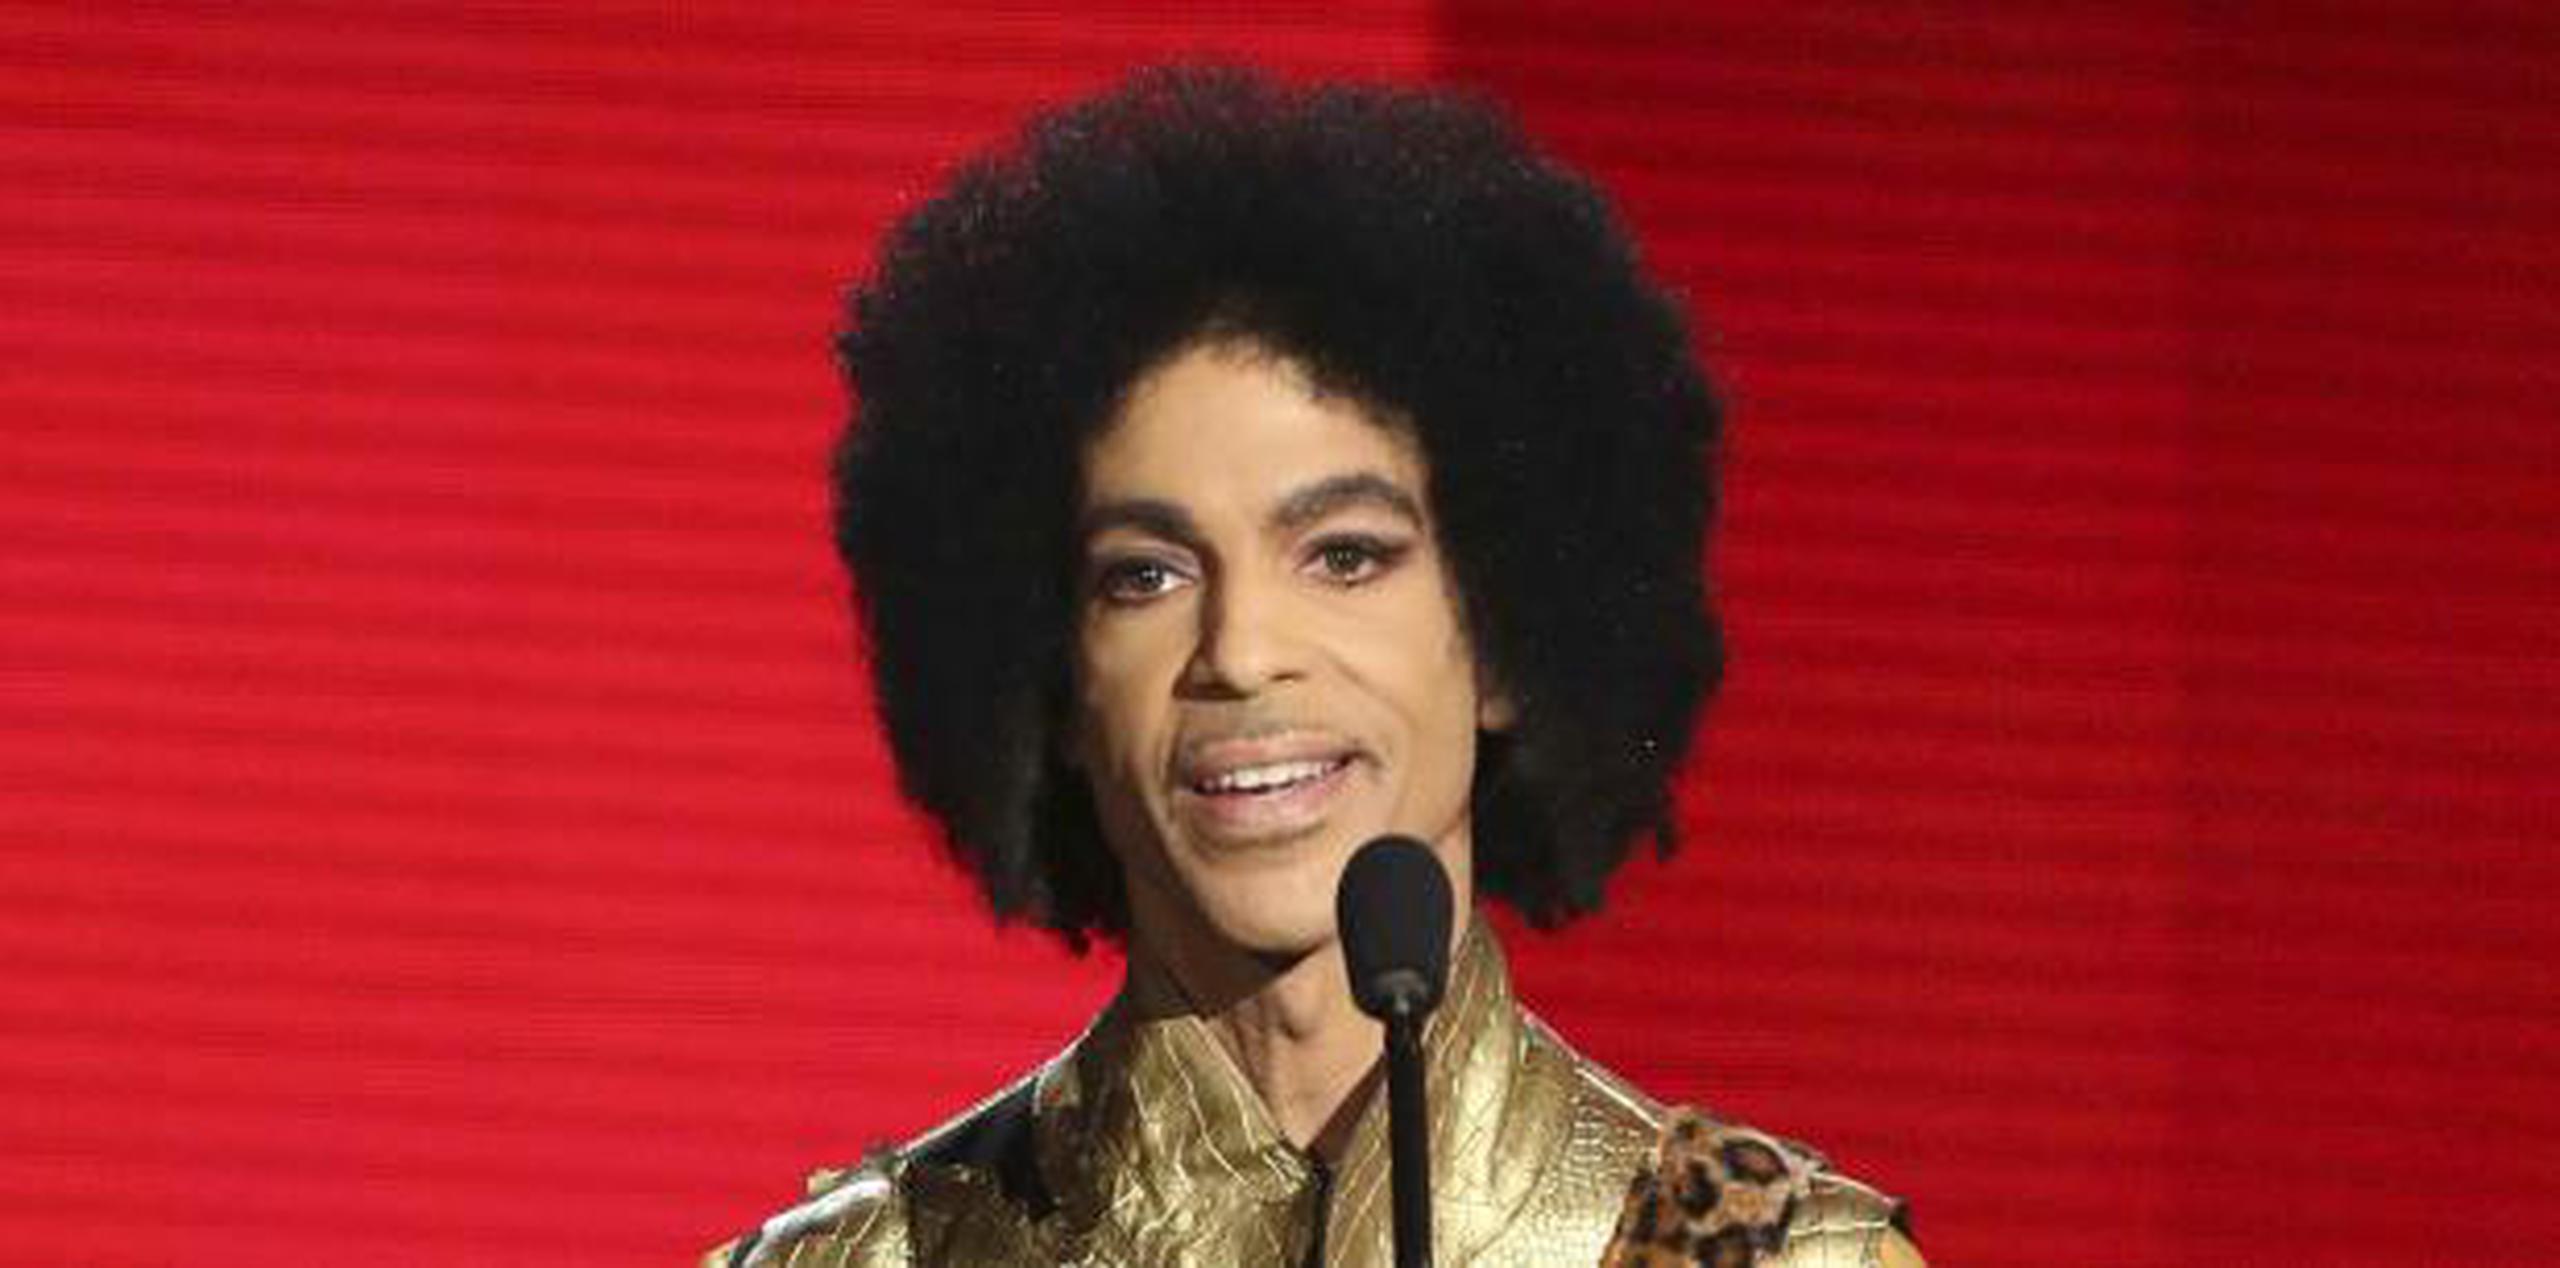 Prince falleció el 21 de abril de 2016. (AP)